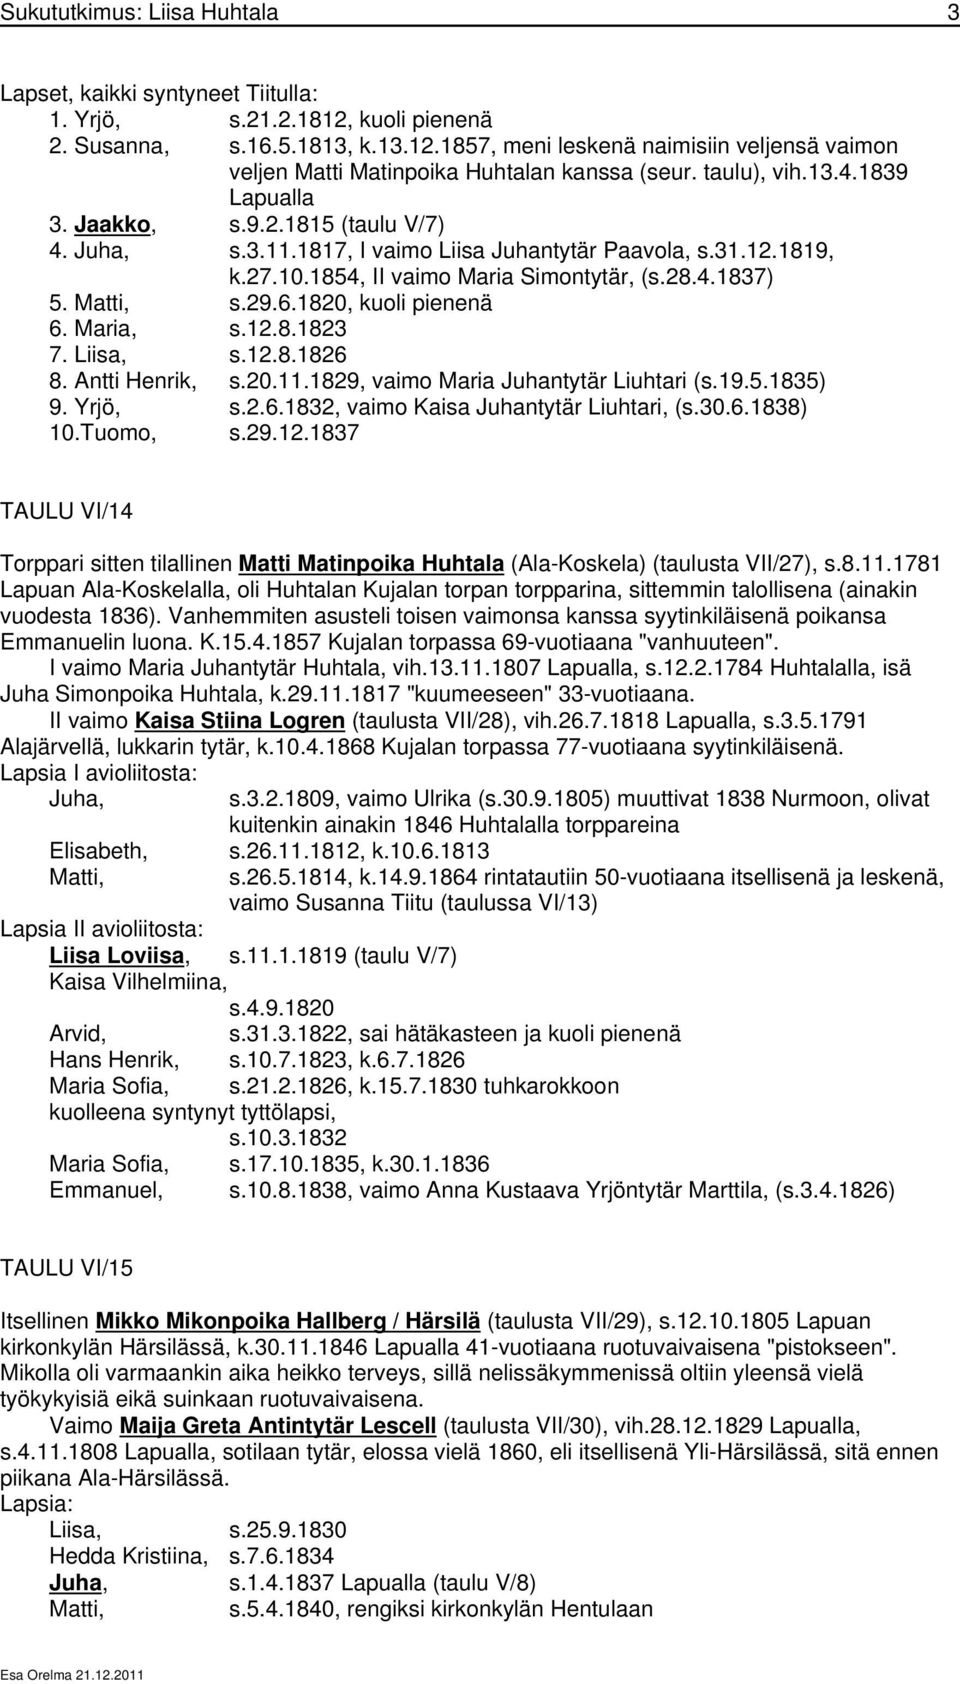 Matti, s.29.6.1820, kuoli pienenä 6. Maria, s.12.8.1823 7. Liisa, s.12.8.1826 8. Antti Henrik, s.20.11.1829, vaimo Maria Juhantytär Liuhtari (s.19.5.1835) 9. Yrjö, s.2.6.1832, vaimo Kaisa Juhantytär Liuhtari, (s.